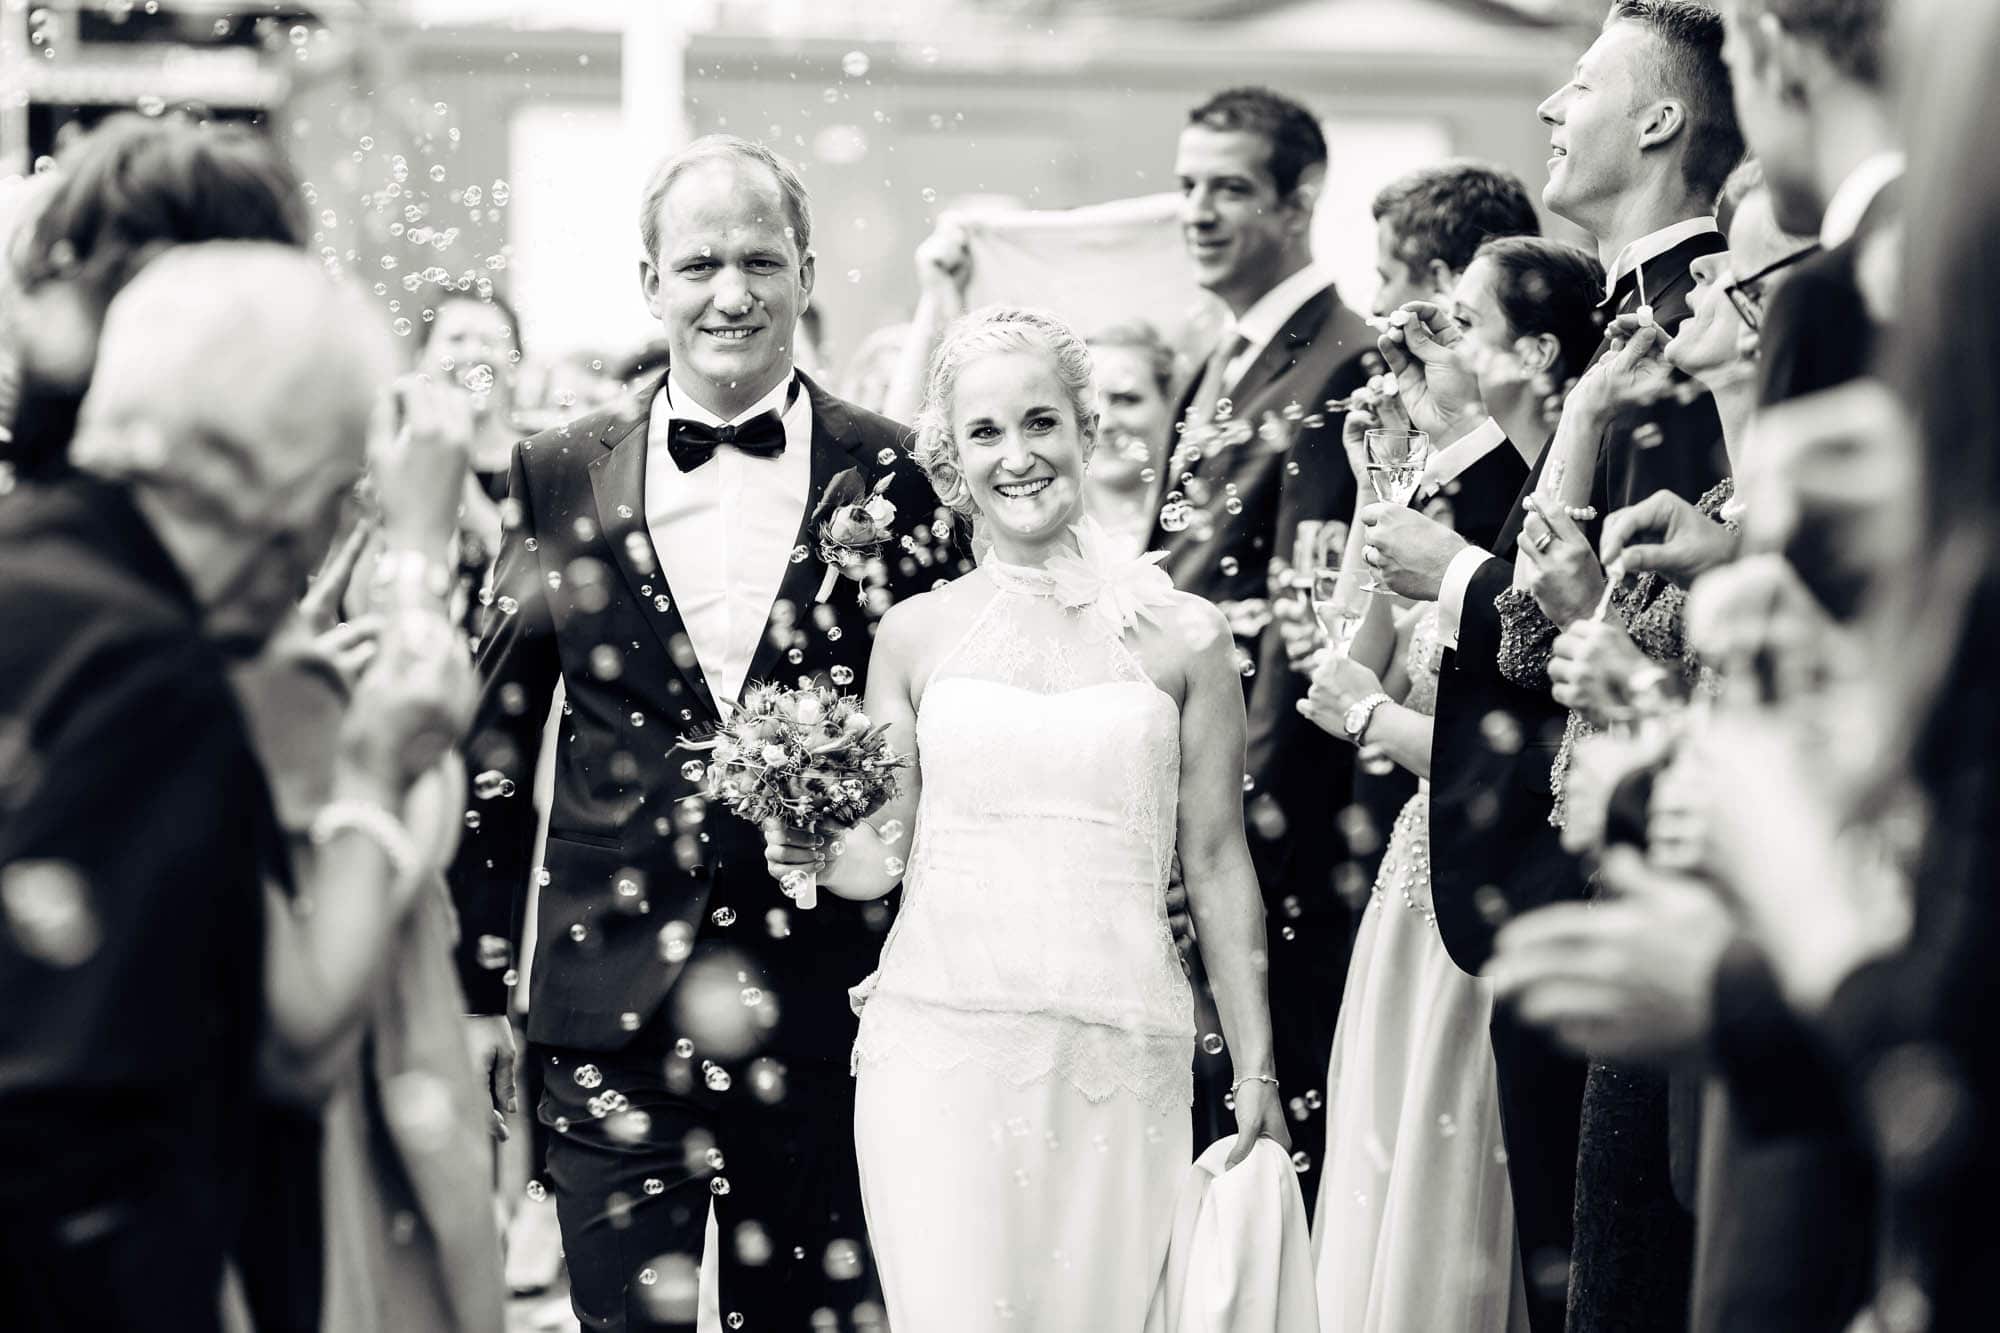 Hochzeitsfest von Fabienne und Mark im Seminarhotel Ägeri vom 19. September 2015.